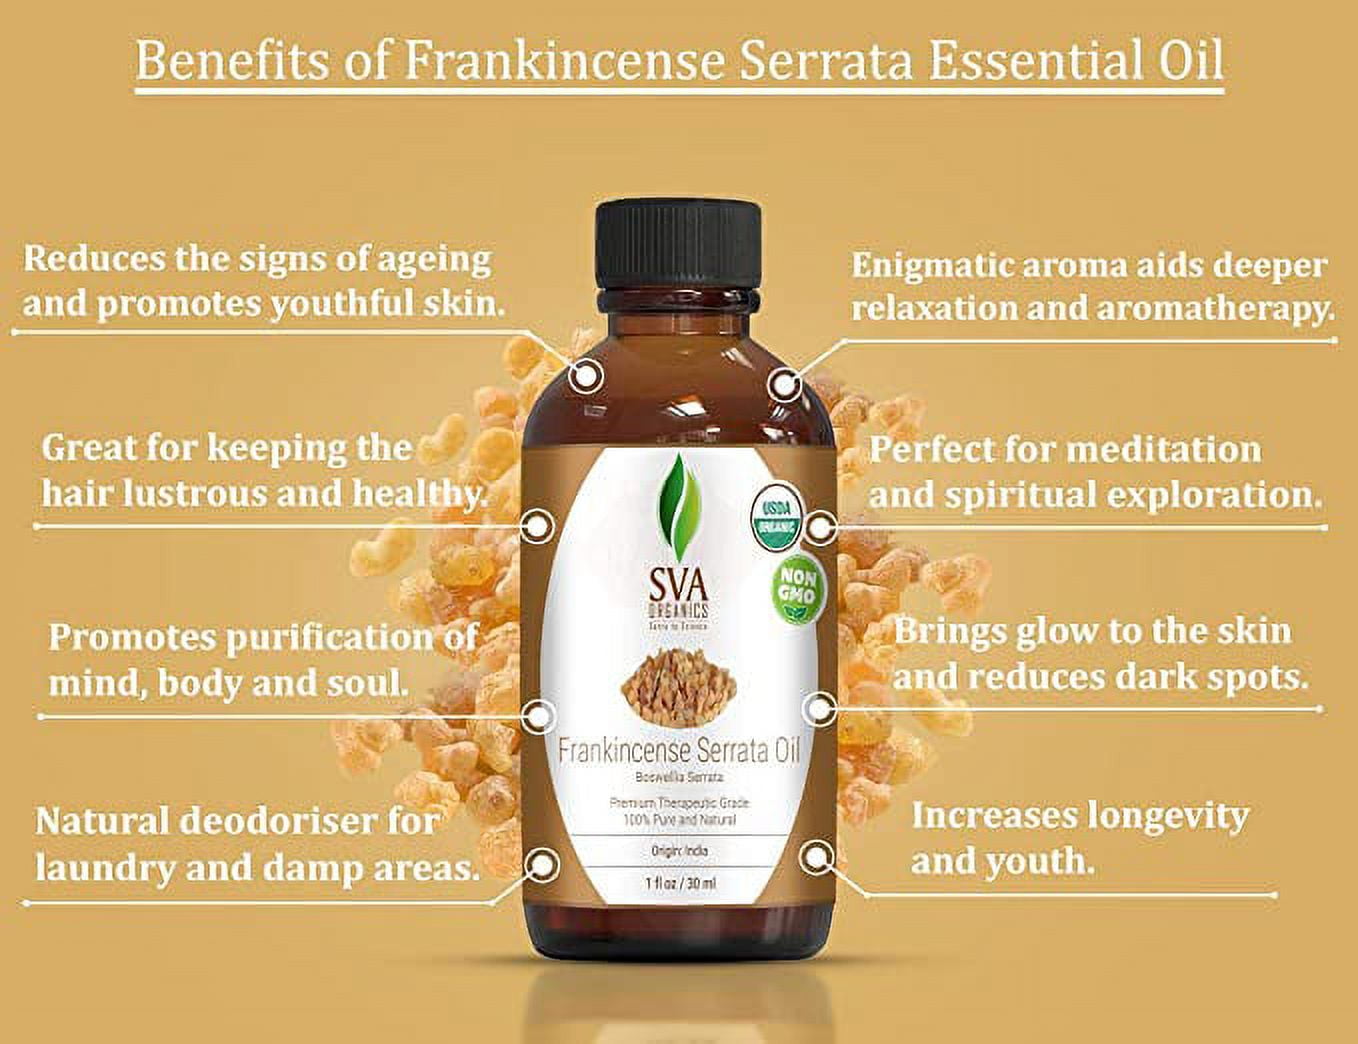 SVA Frankincense Essential Oil 1oz (30ml) Boswellia Serrata Premium  Essential Oil with Dropper for Diffuser, Aromatherapy, Hair Care and Skin  Massage